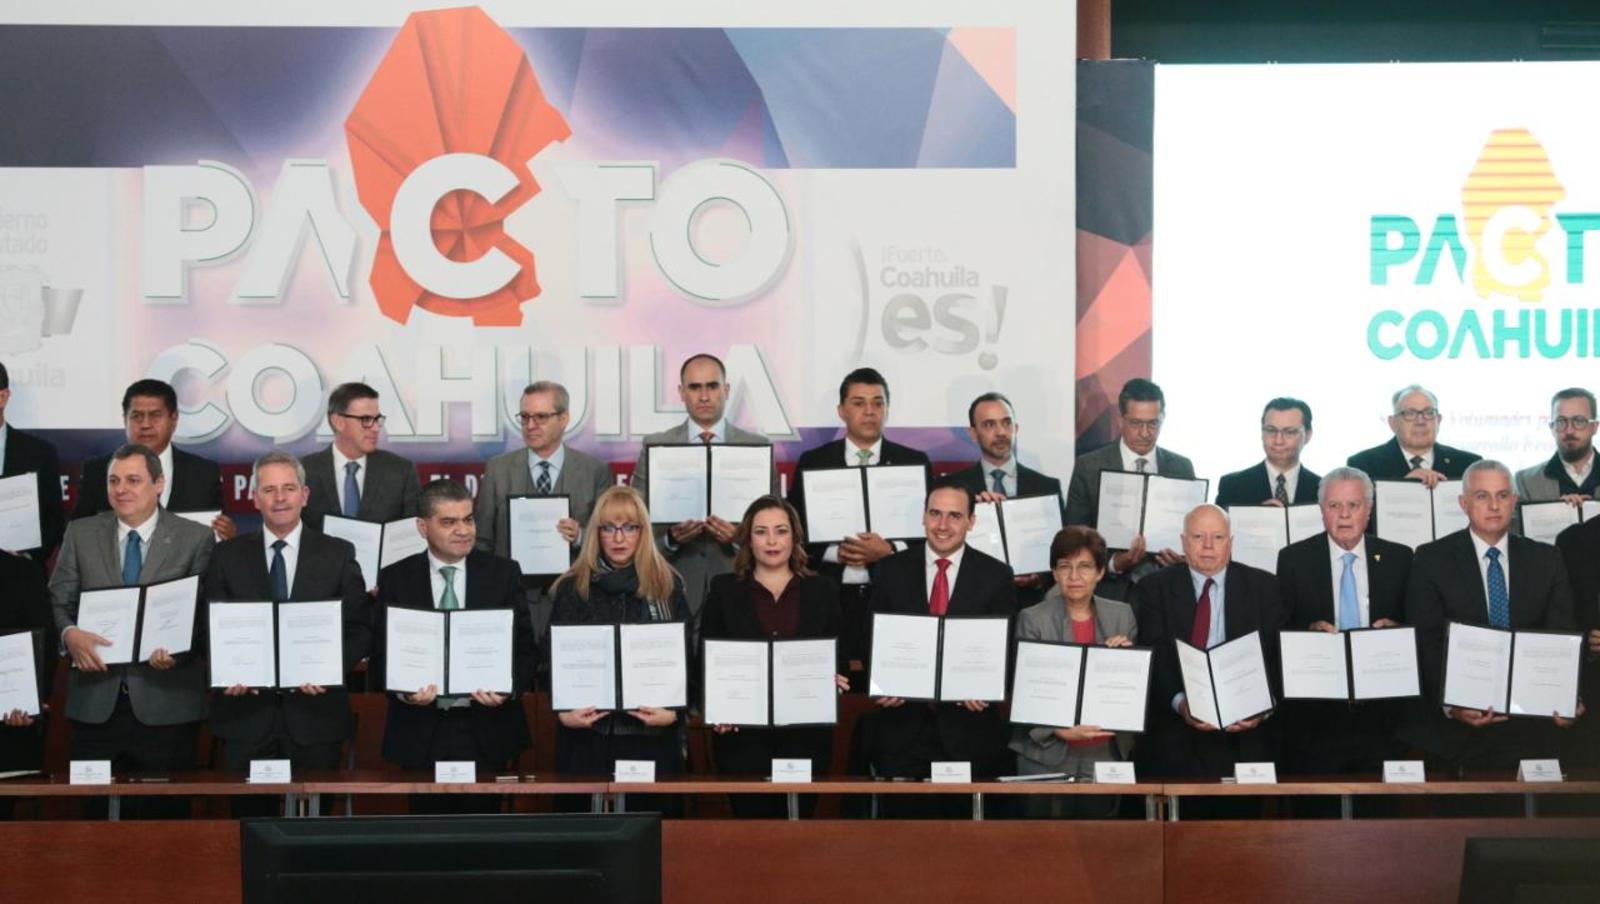 Trabajadores, empresarios y gobierno firman Pacto Coahuila